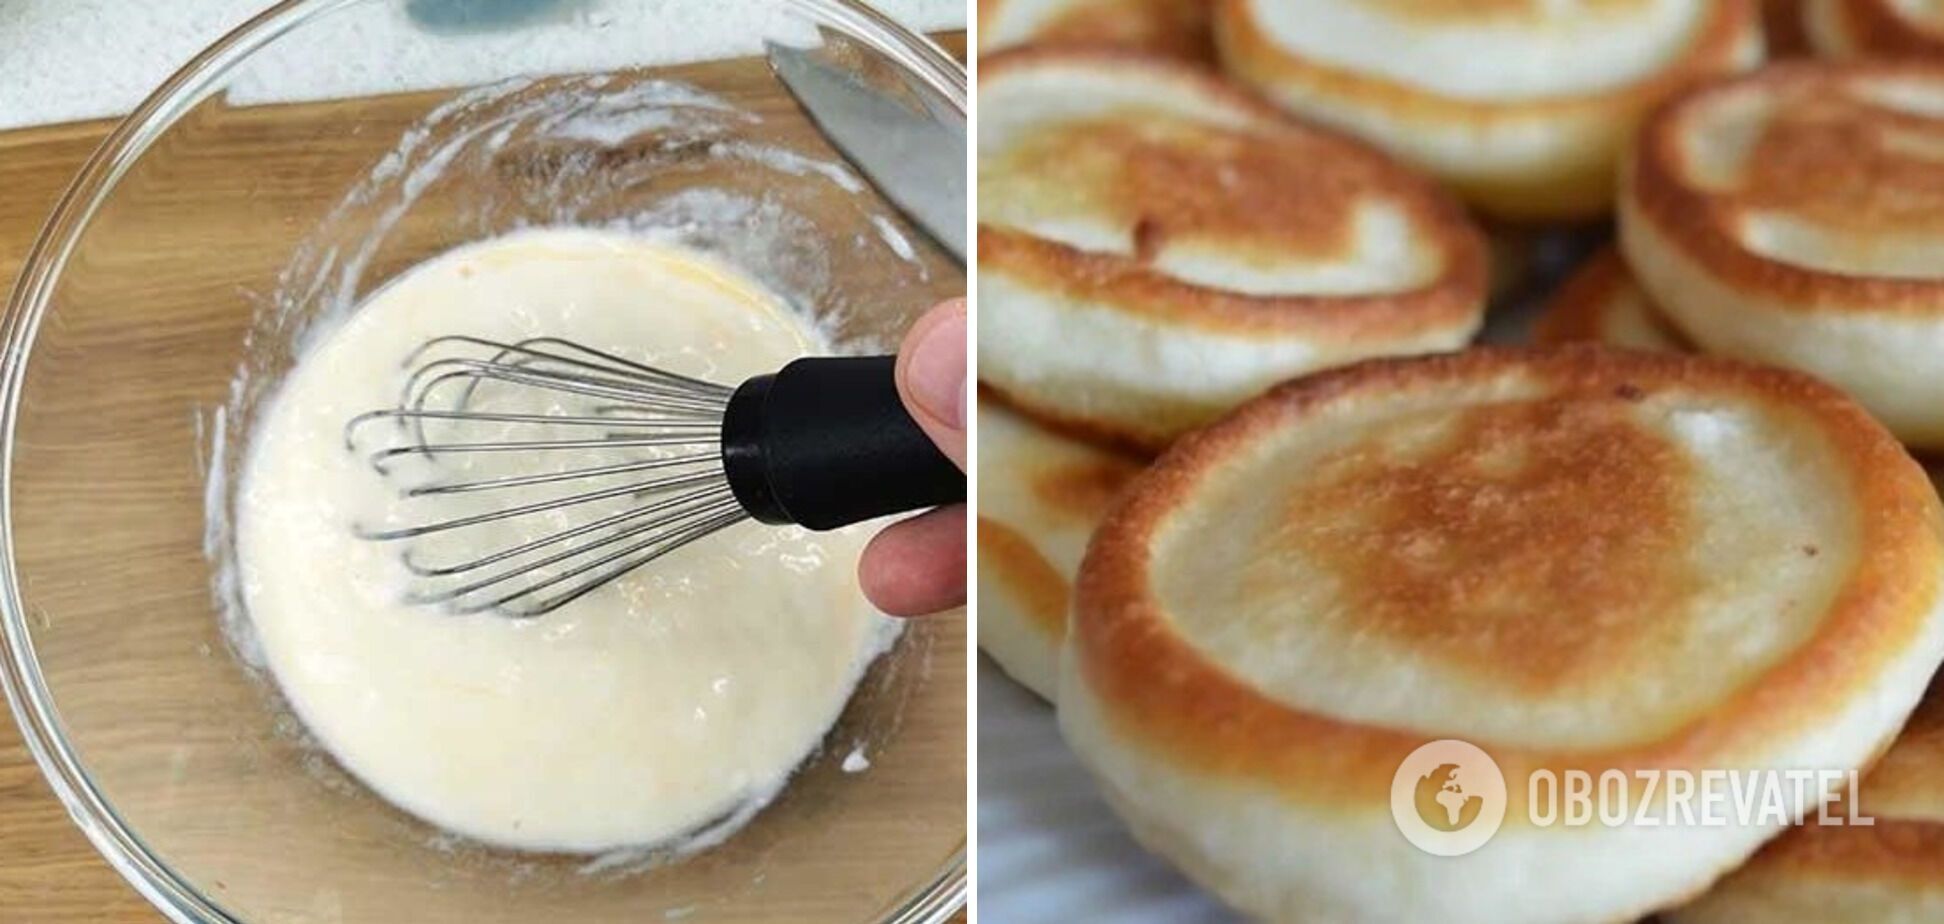 Pancake batter